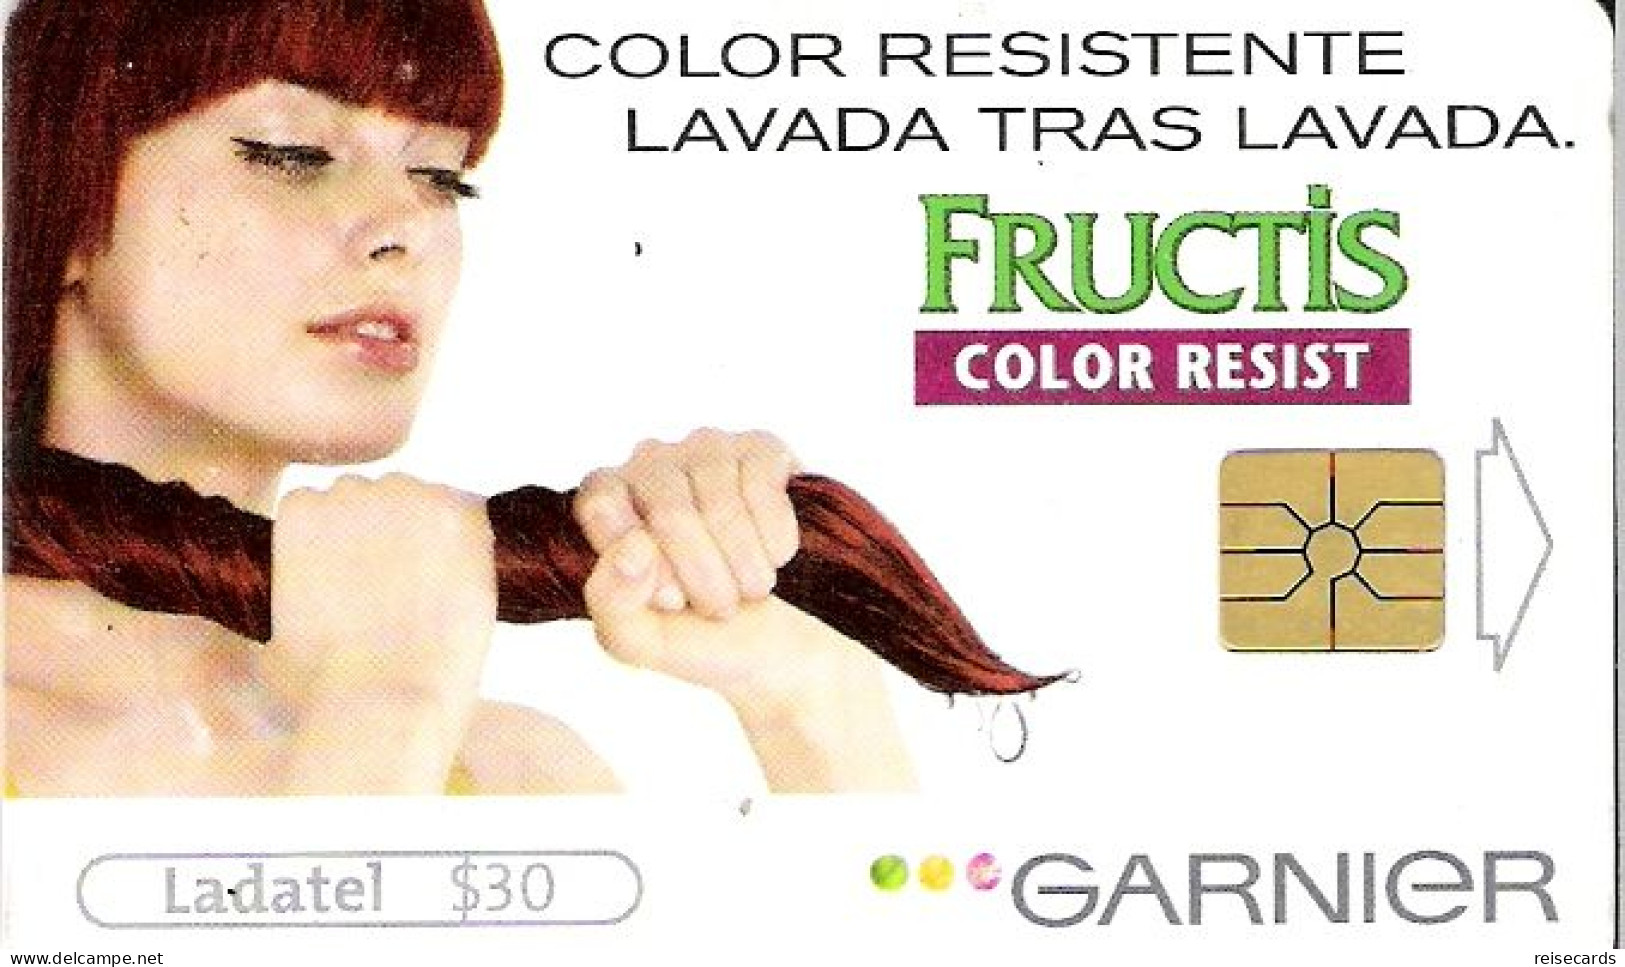 Mexico: Telmex/lLadatel - 2003 Garnier, Fructis - Mexique